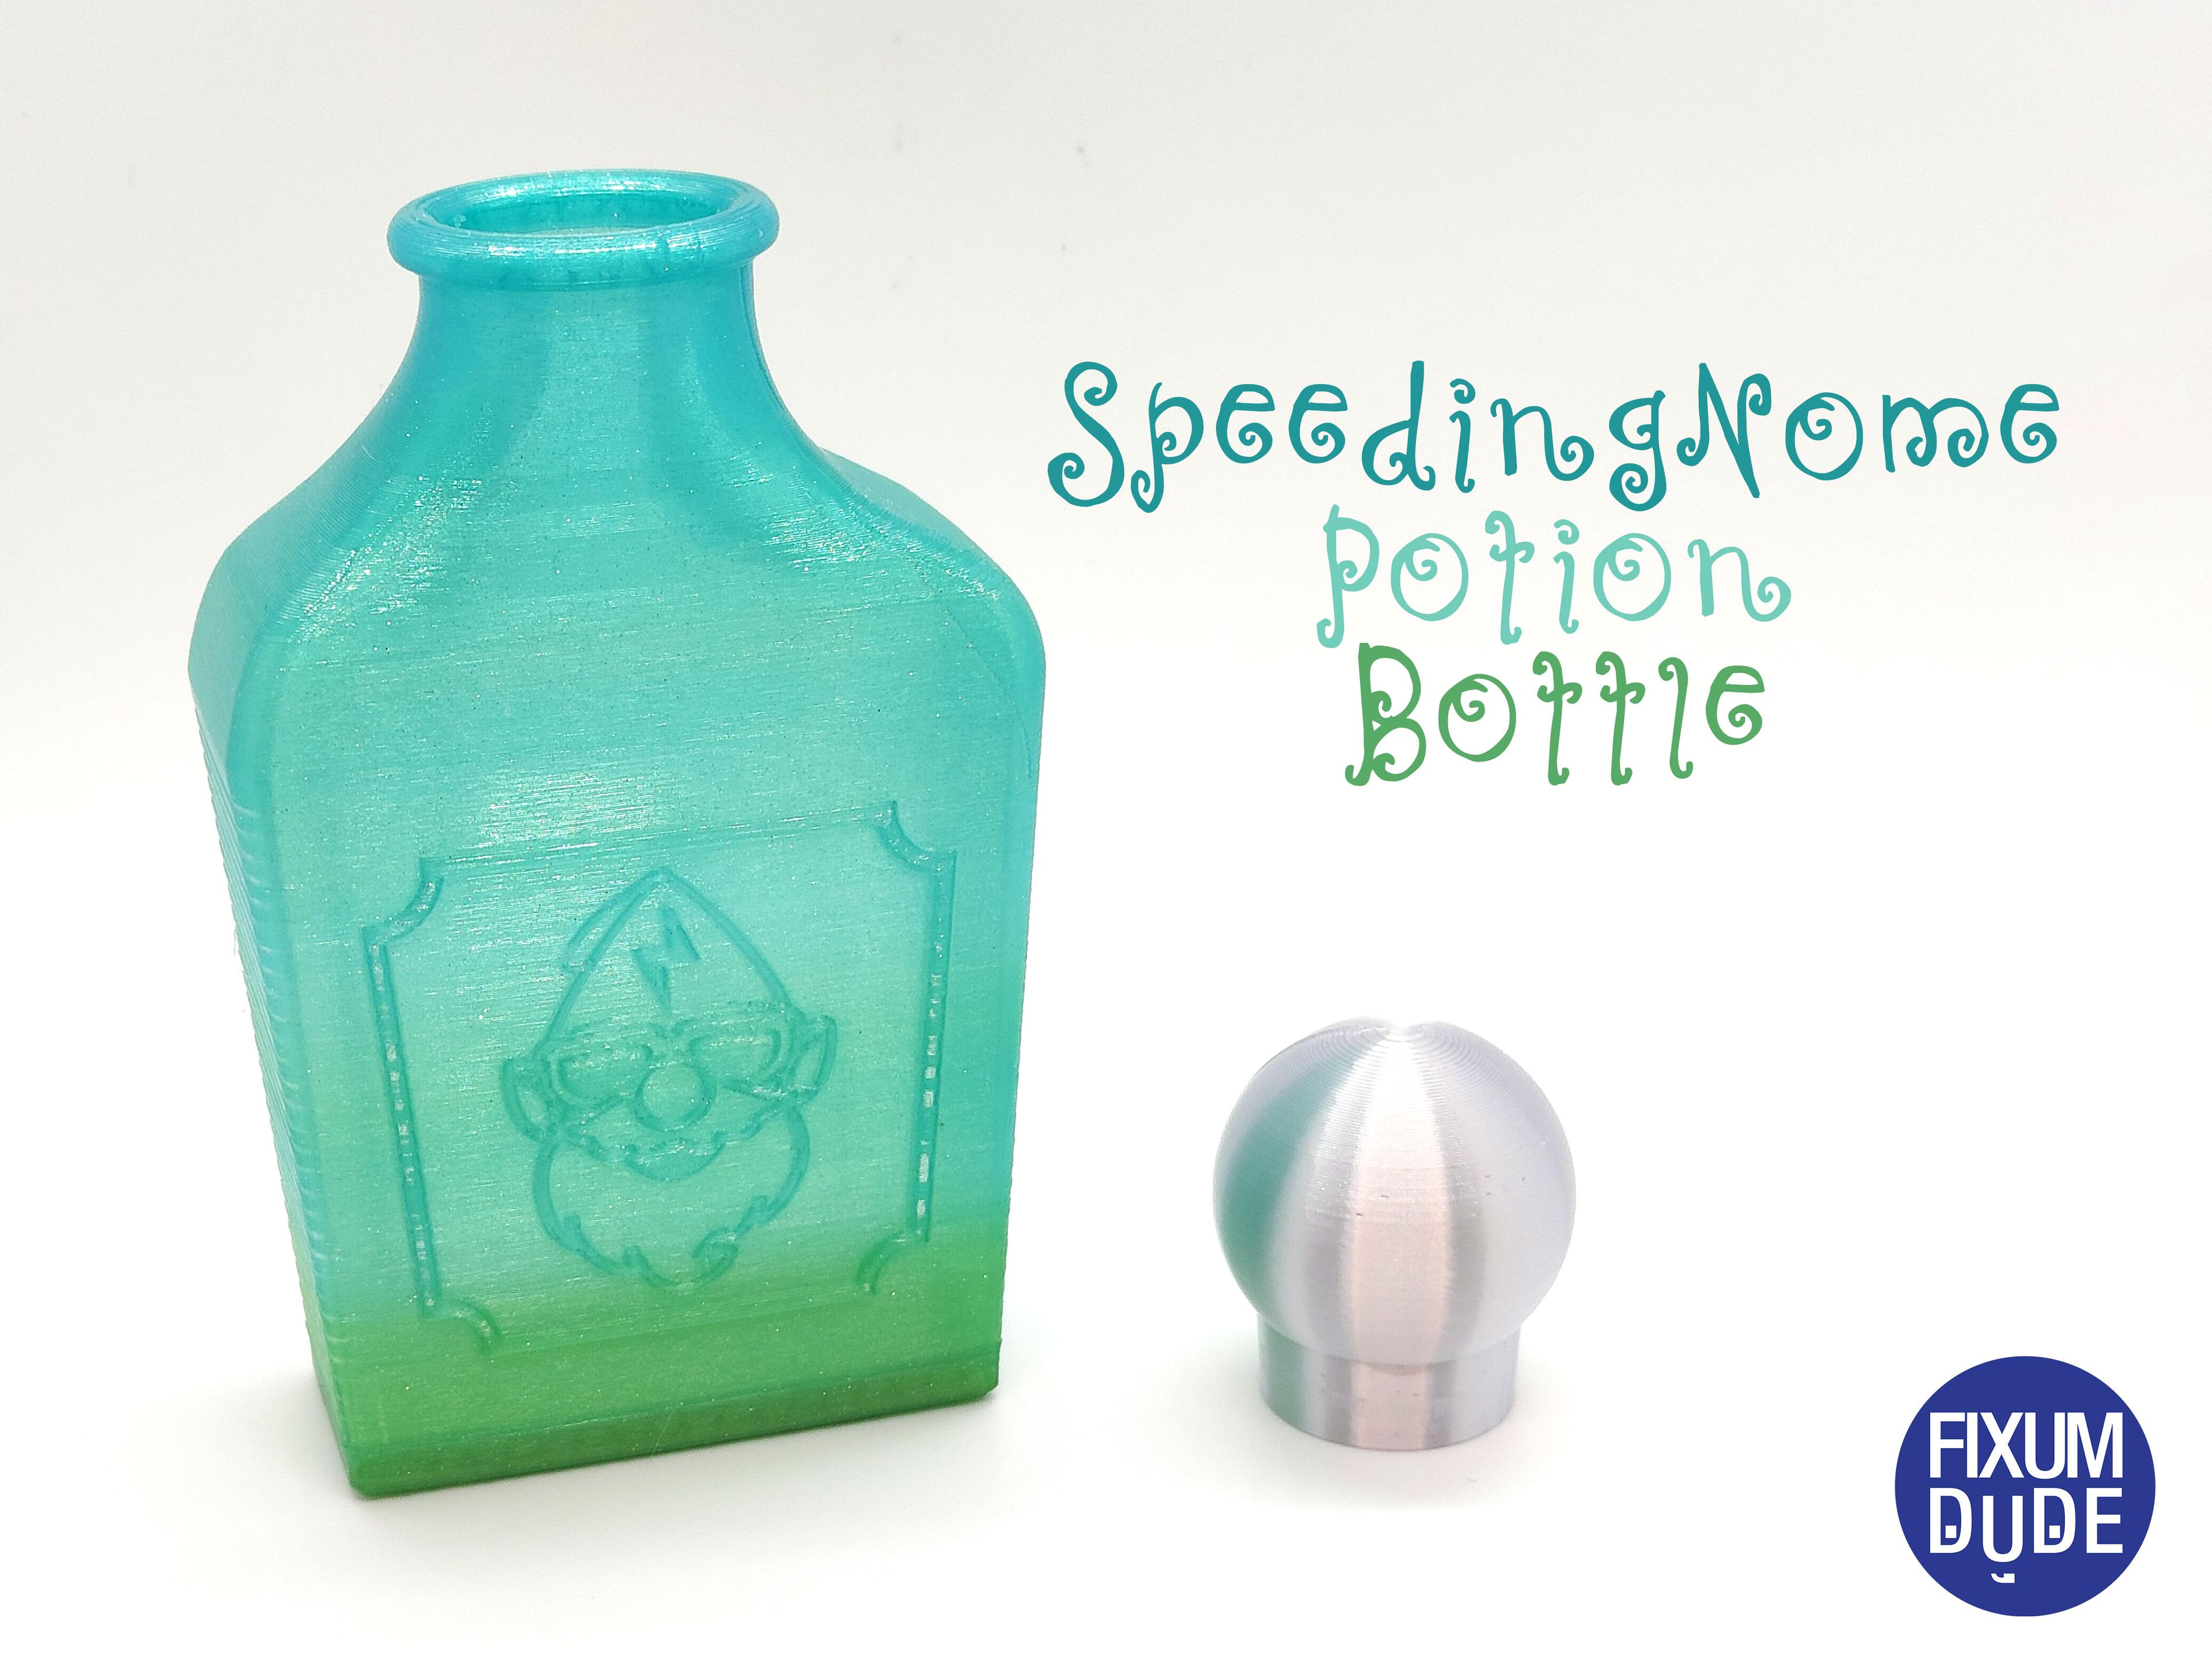 SpeedingNome Potion Bottle 3d model